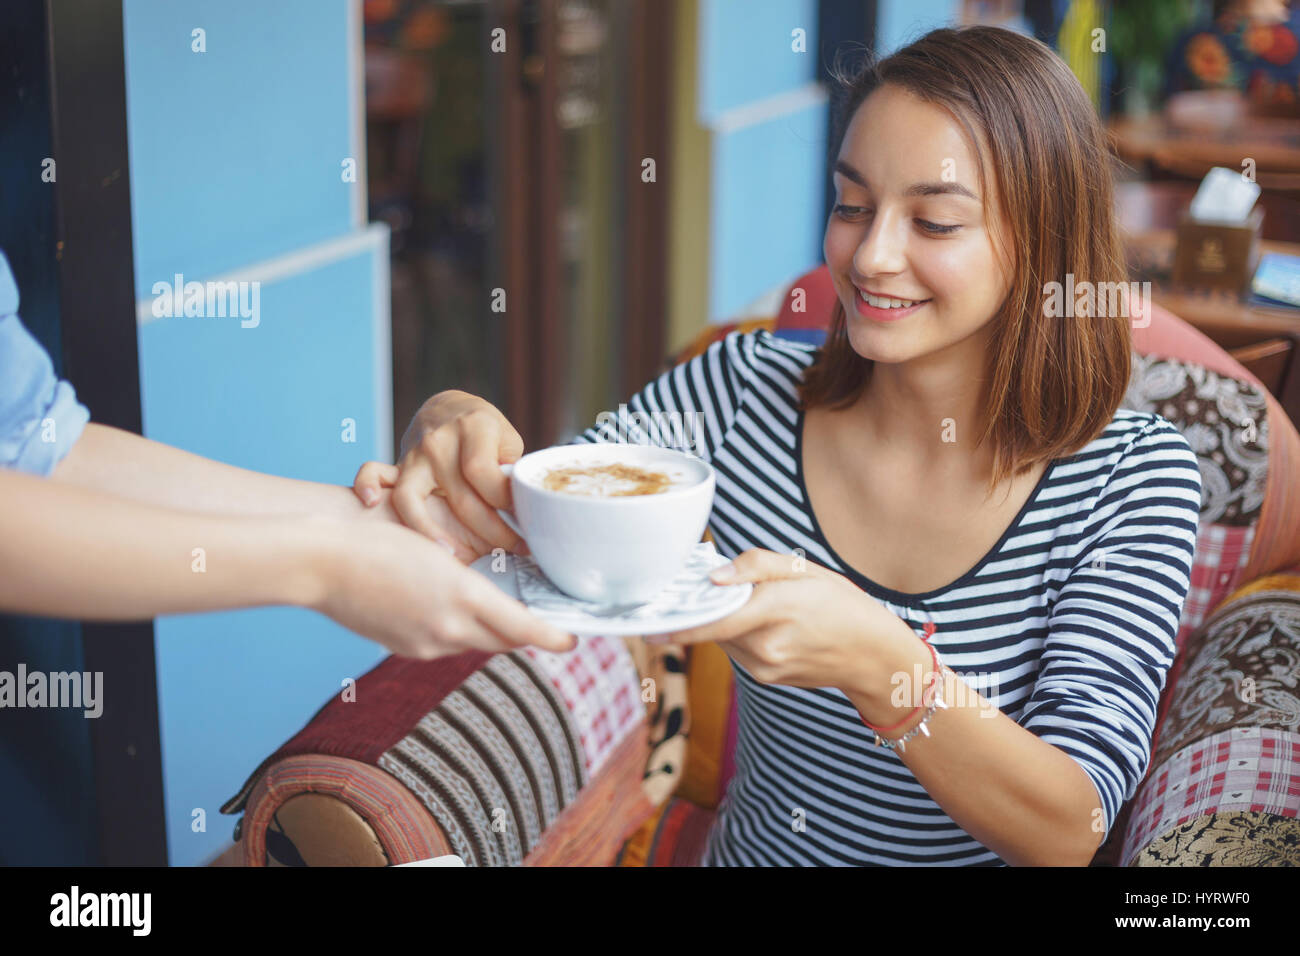 Giovane donna seduta indoor in ambiente urbano cafe. Cafe lo stile di vita della città. Casual ritratto della ragazza adolescente Foto Stock